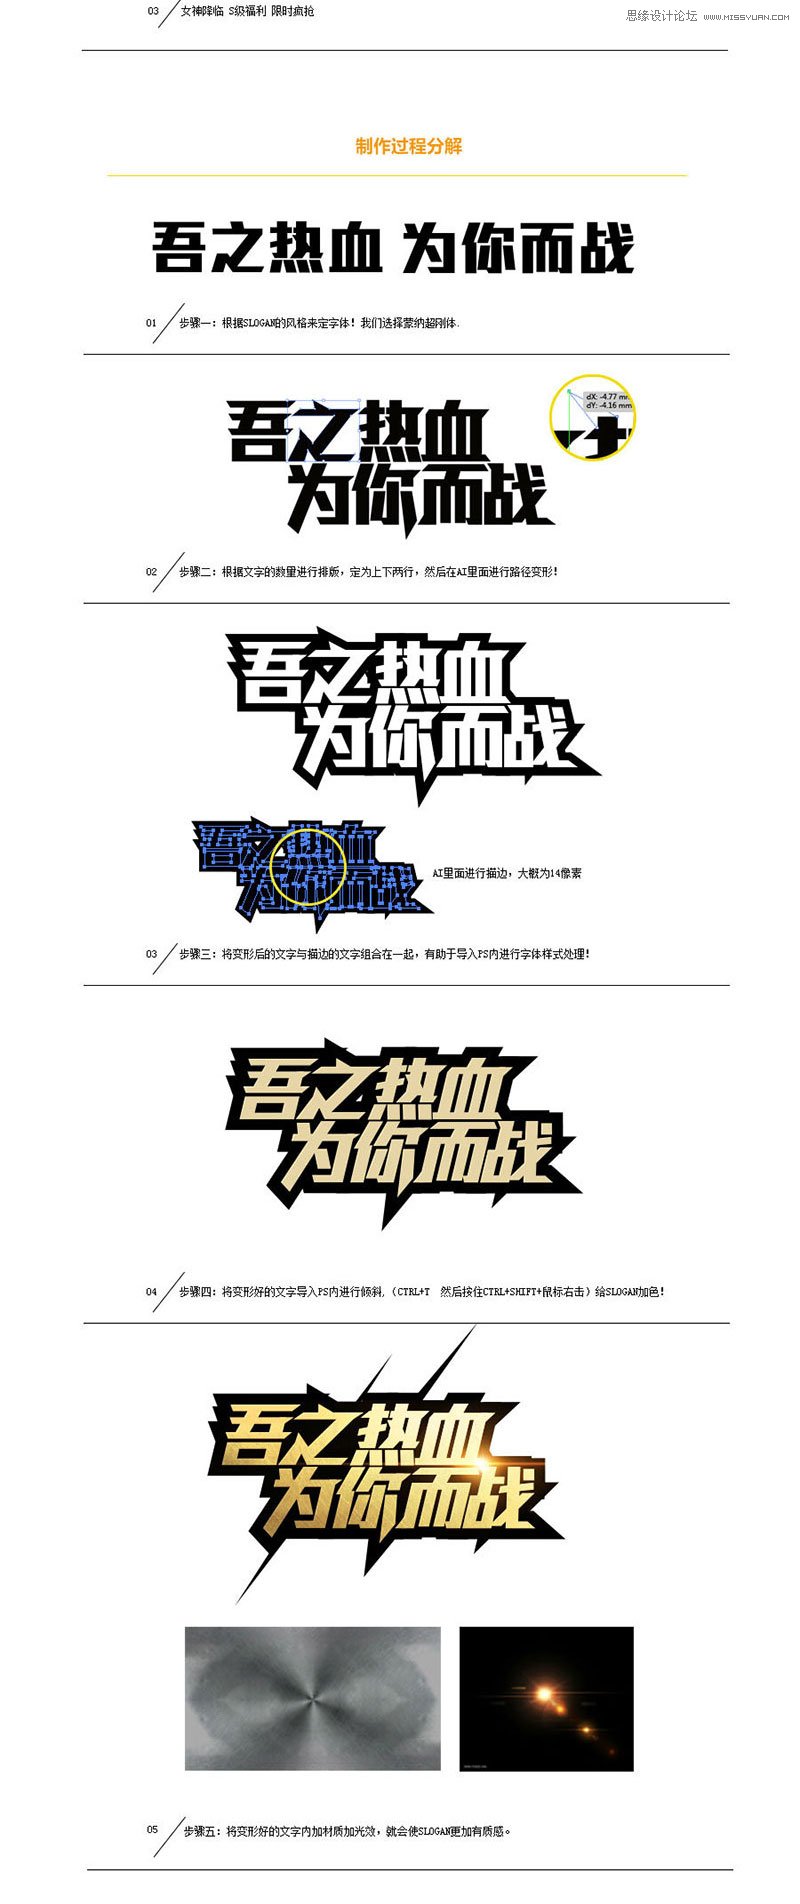 詳細解析中文海報字體設計心得技巧,PS教程